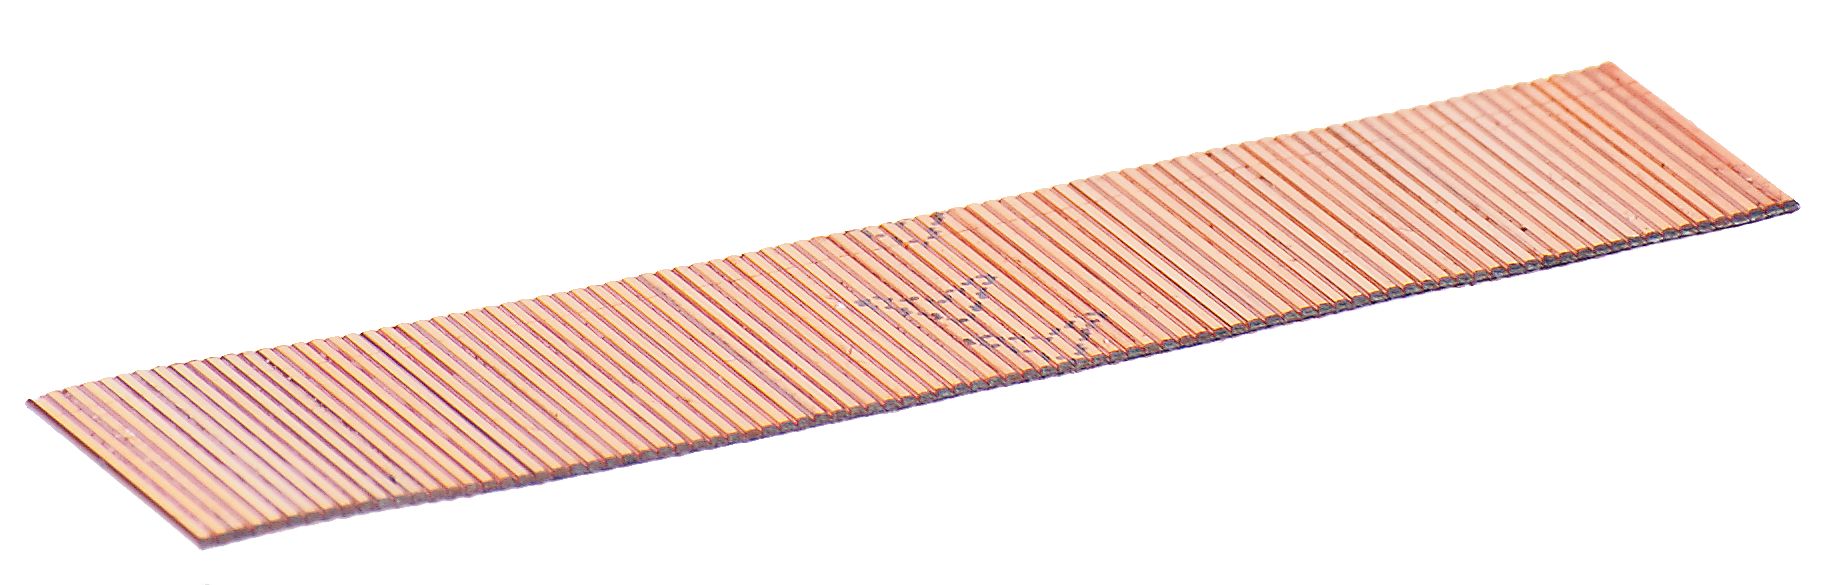 FUBAG Шпильки для P25 (0.64, 20 мм, 10000 шт)